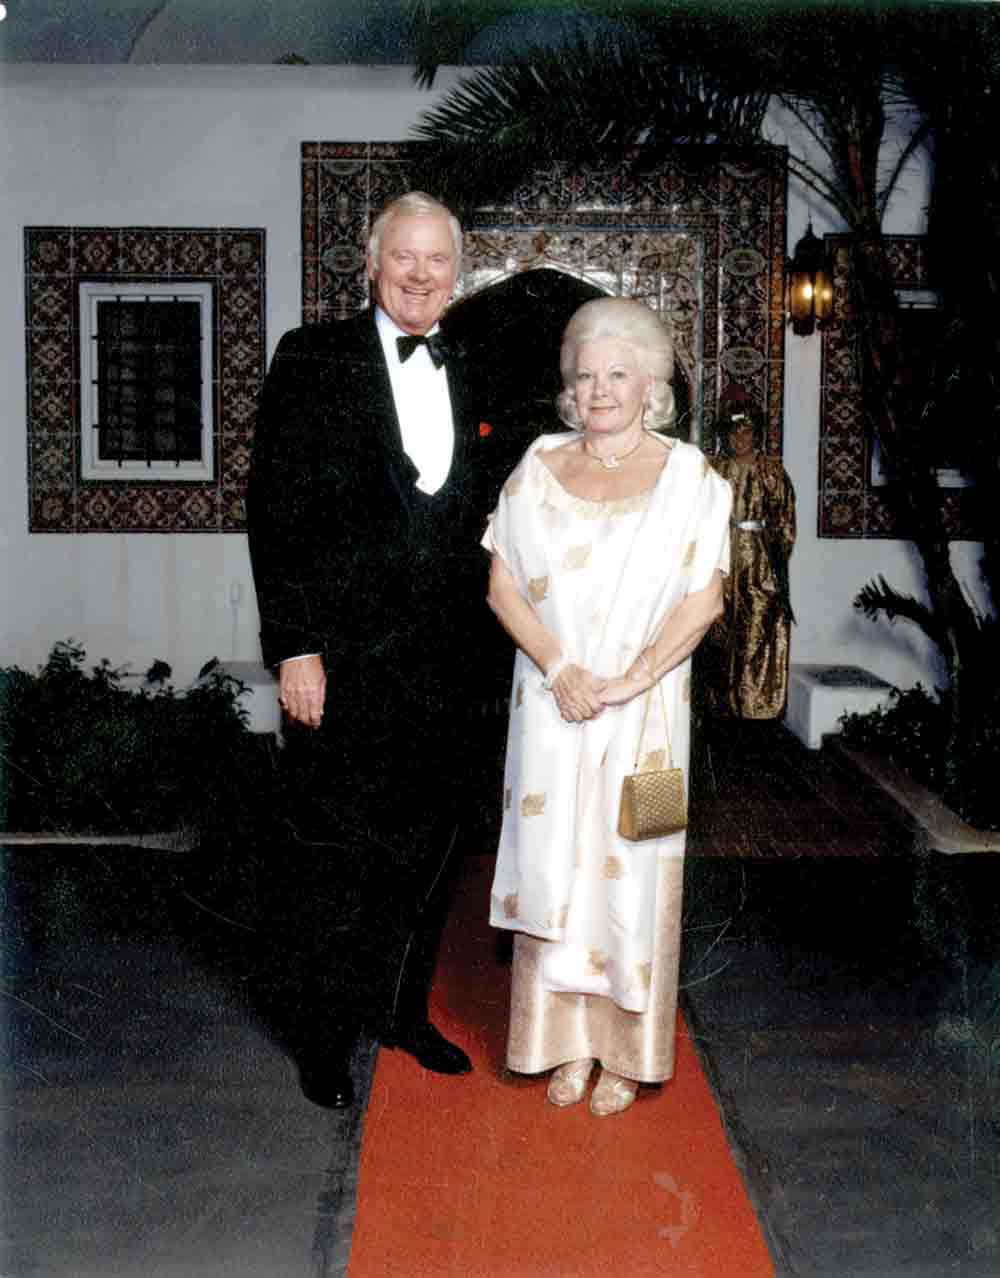 Martin V. Smith and Martha K. Smith in the 1970s